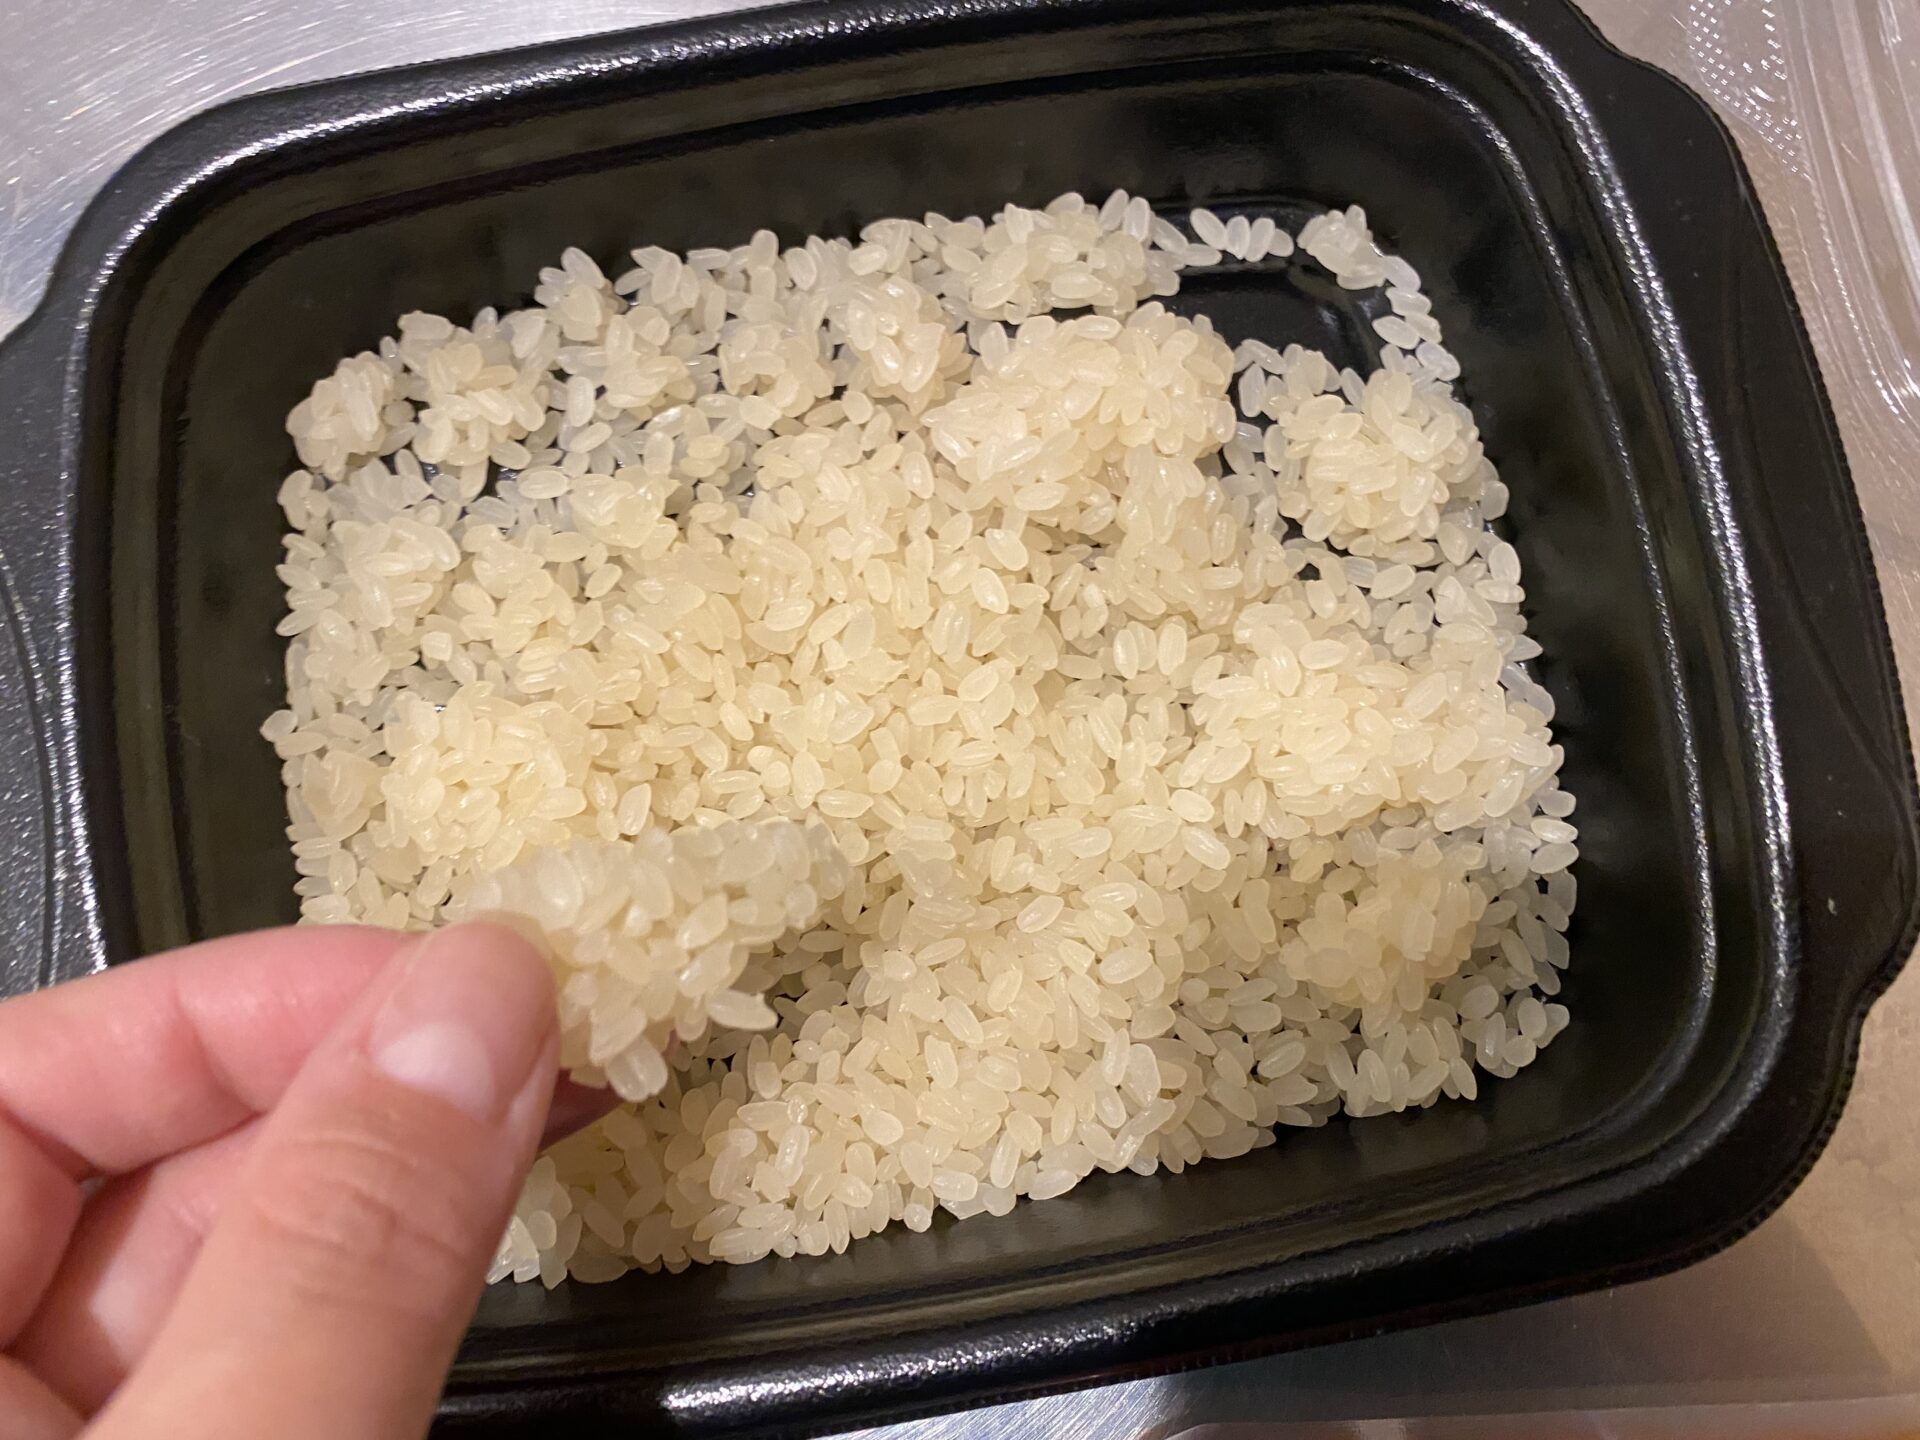 容器に袋から出したお米を入れた写真。かたまりになったお米を指でもちあげています